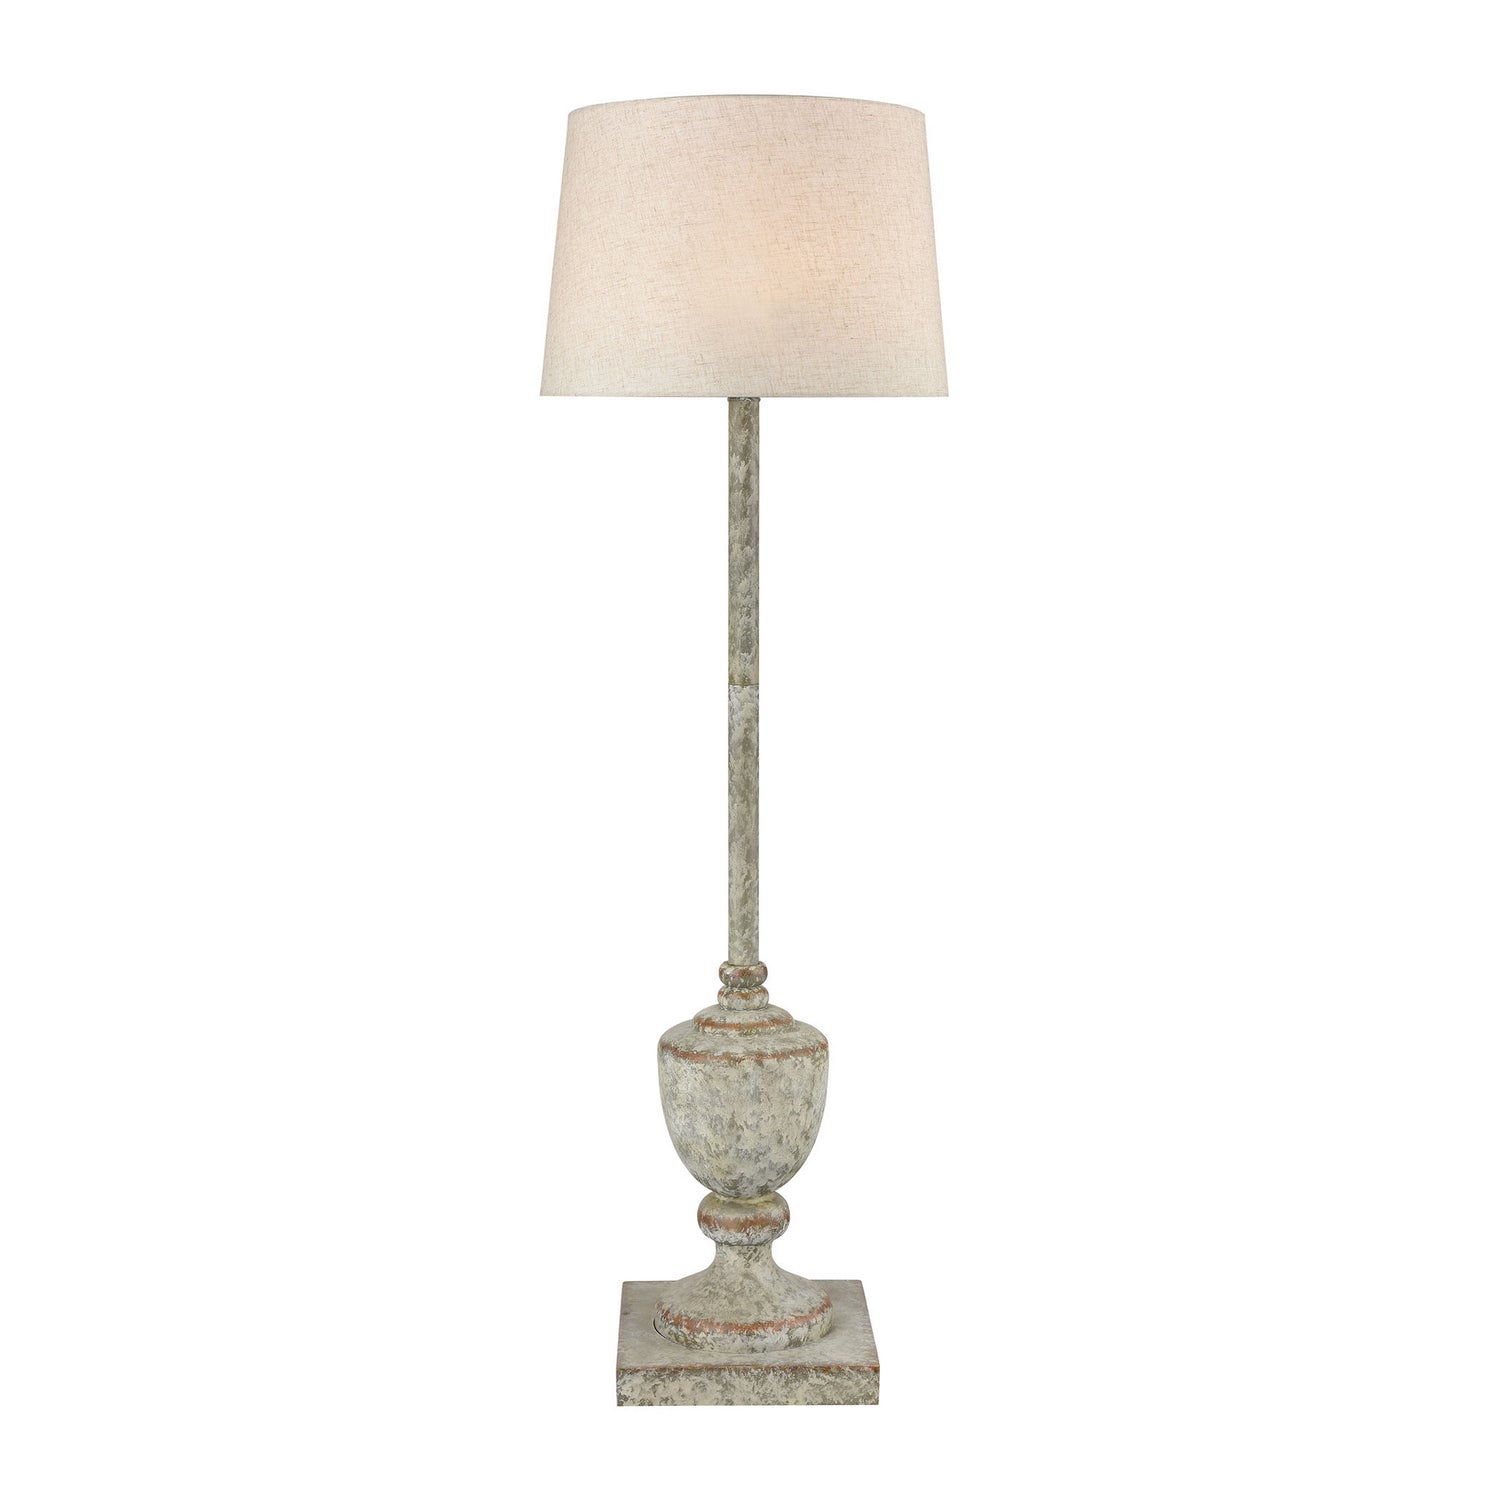 ELK Home - D4390 - One Light Floor Lamp - Regus - Antique Gray